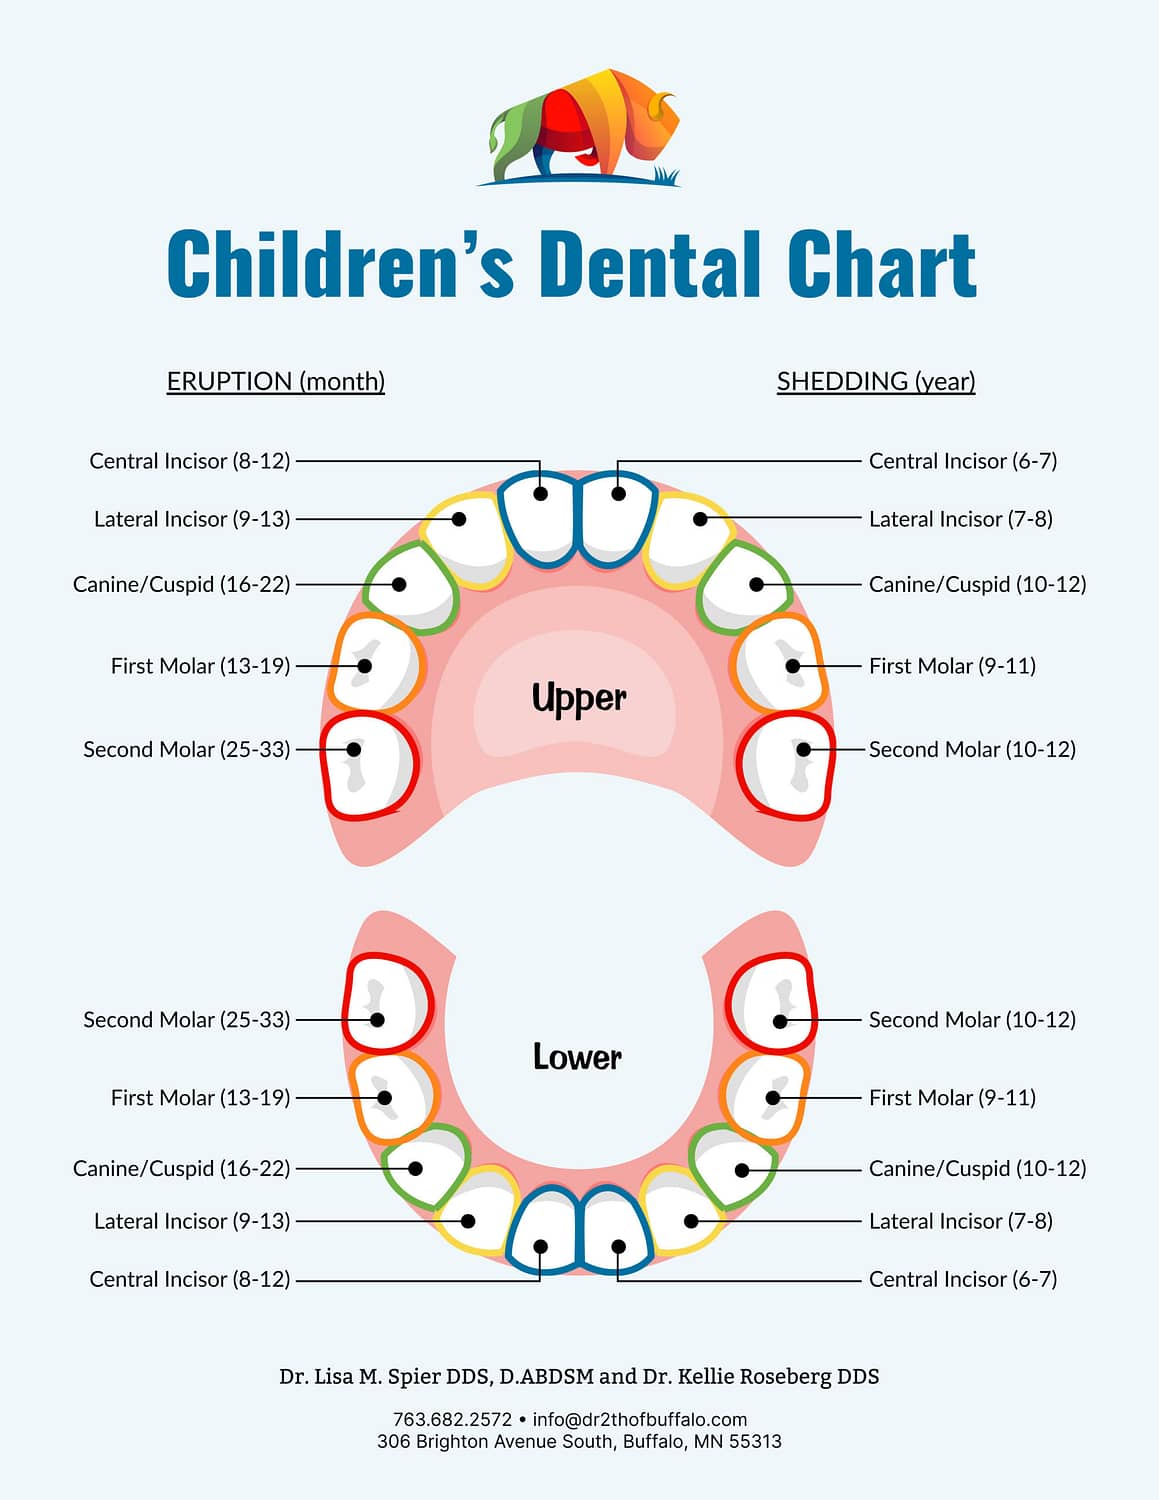 Children's Dental tooth eruption chart